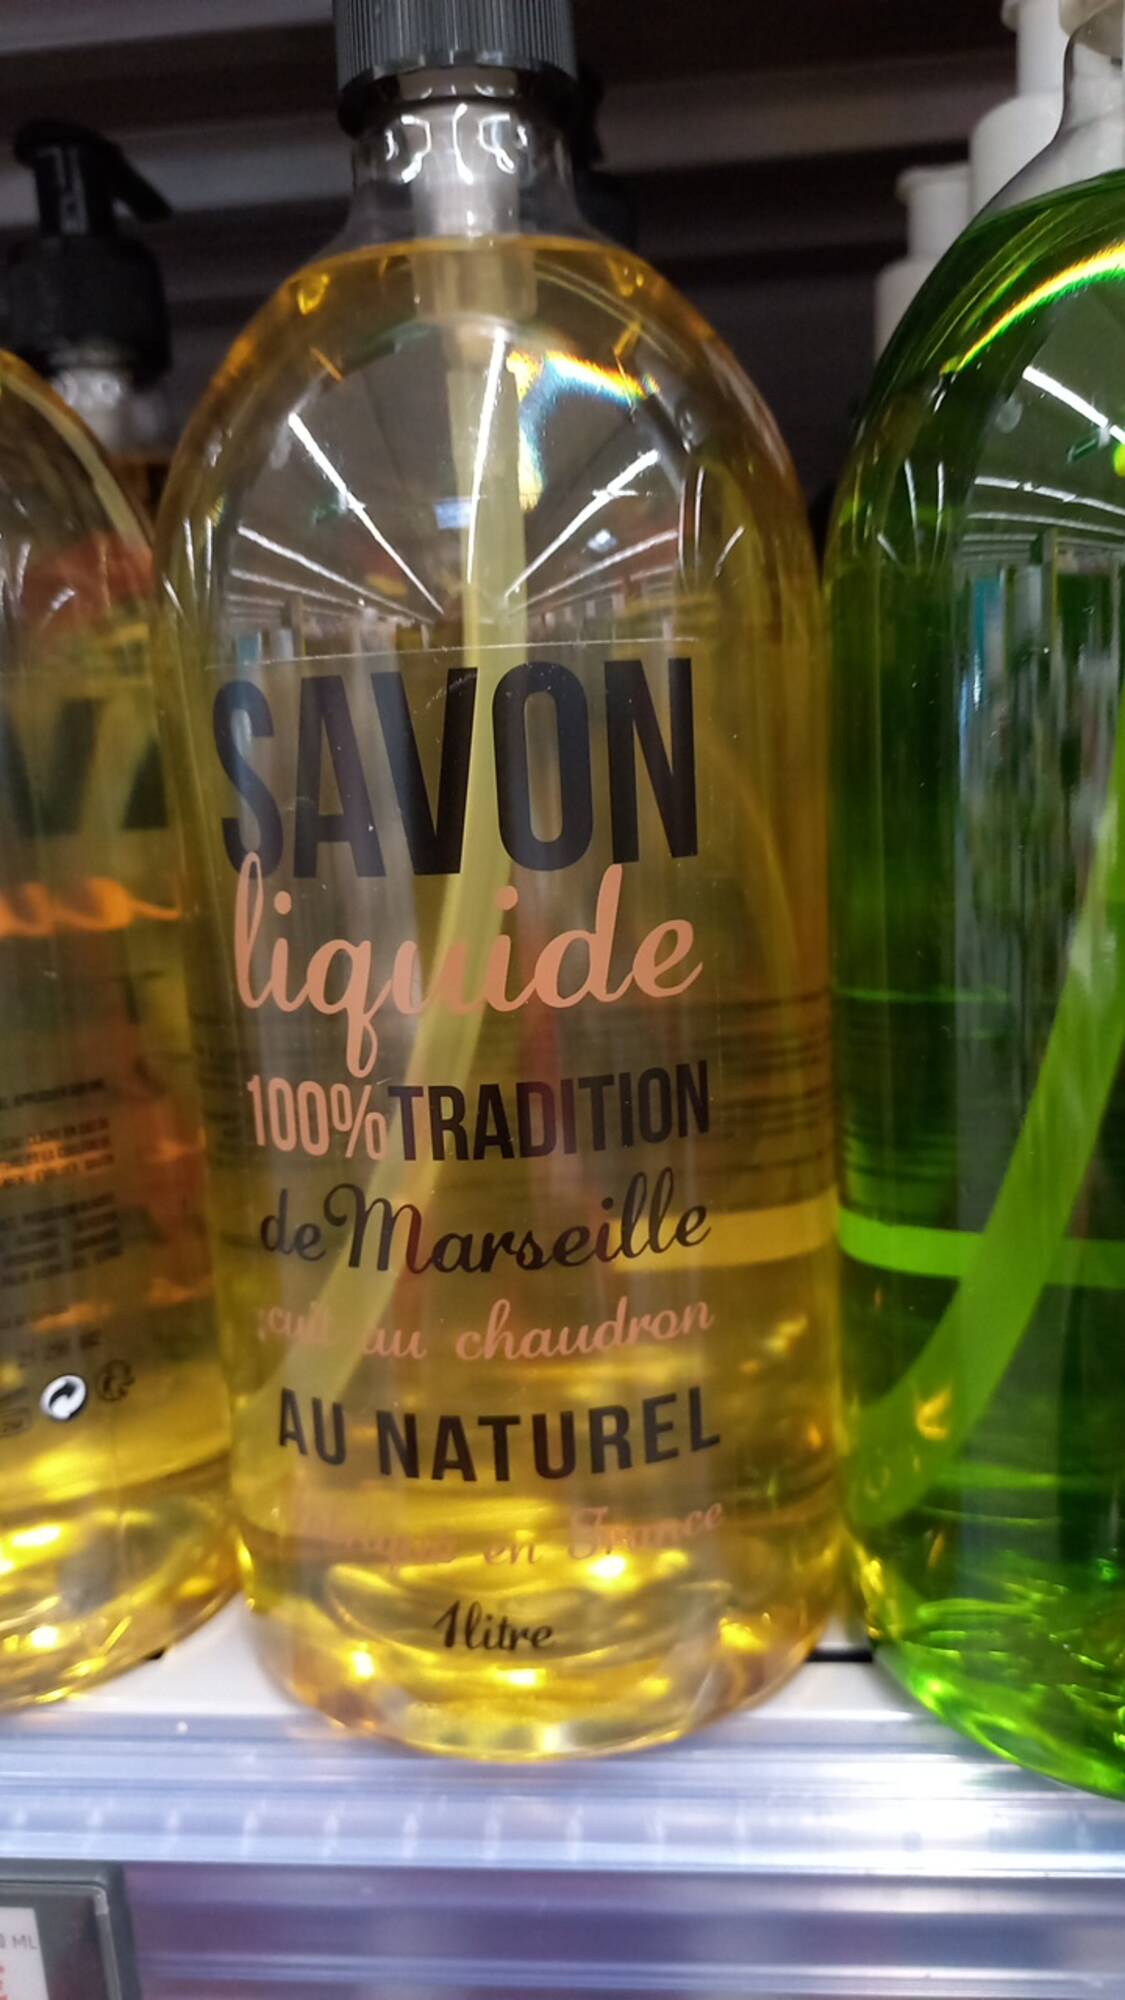 APOINT - Savon liquide 100% tradition de Marseille cuit au Chaudron